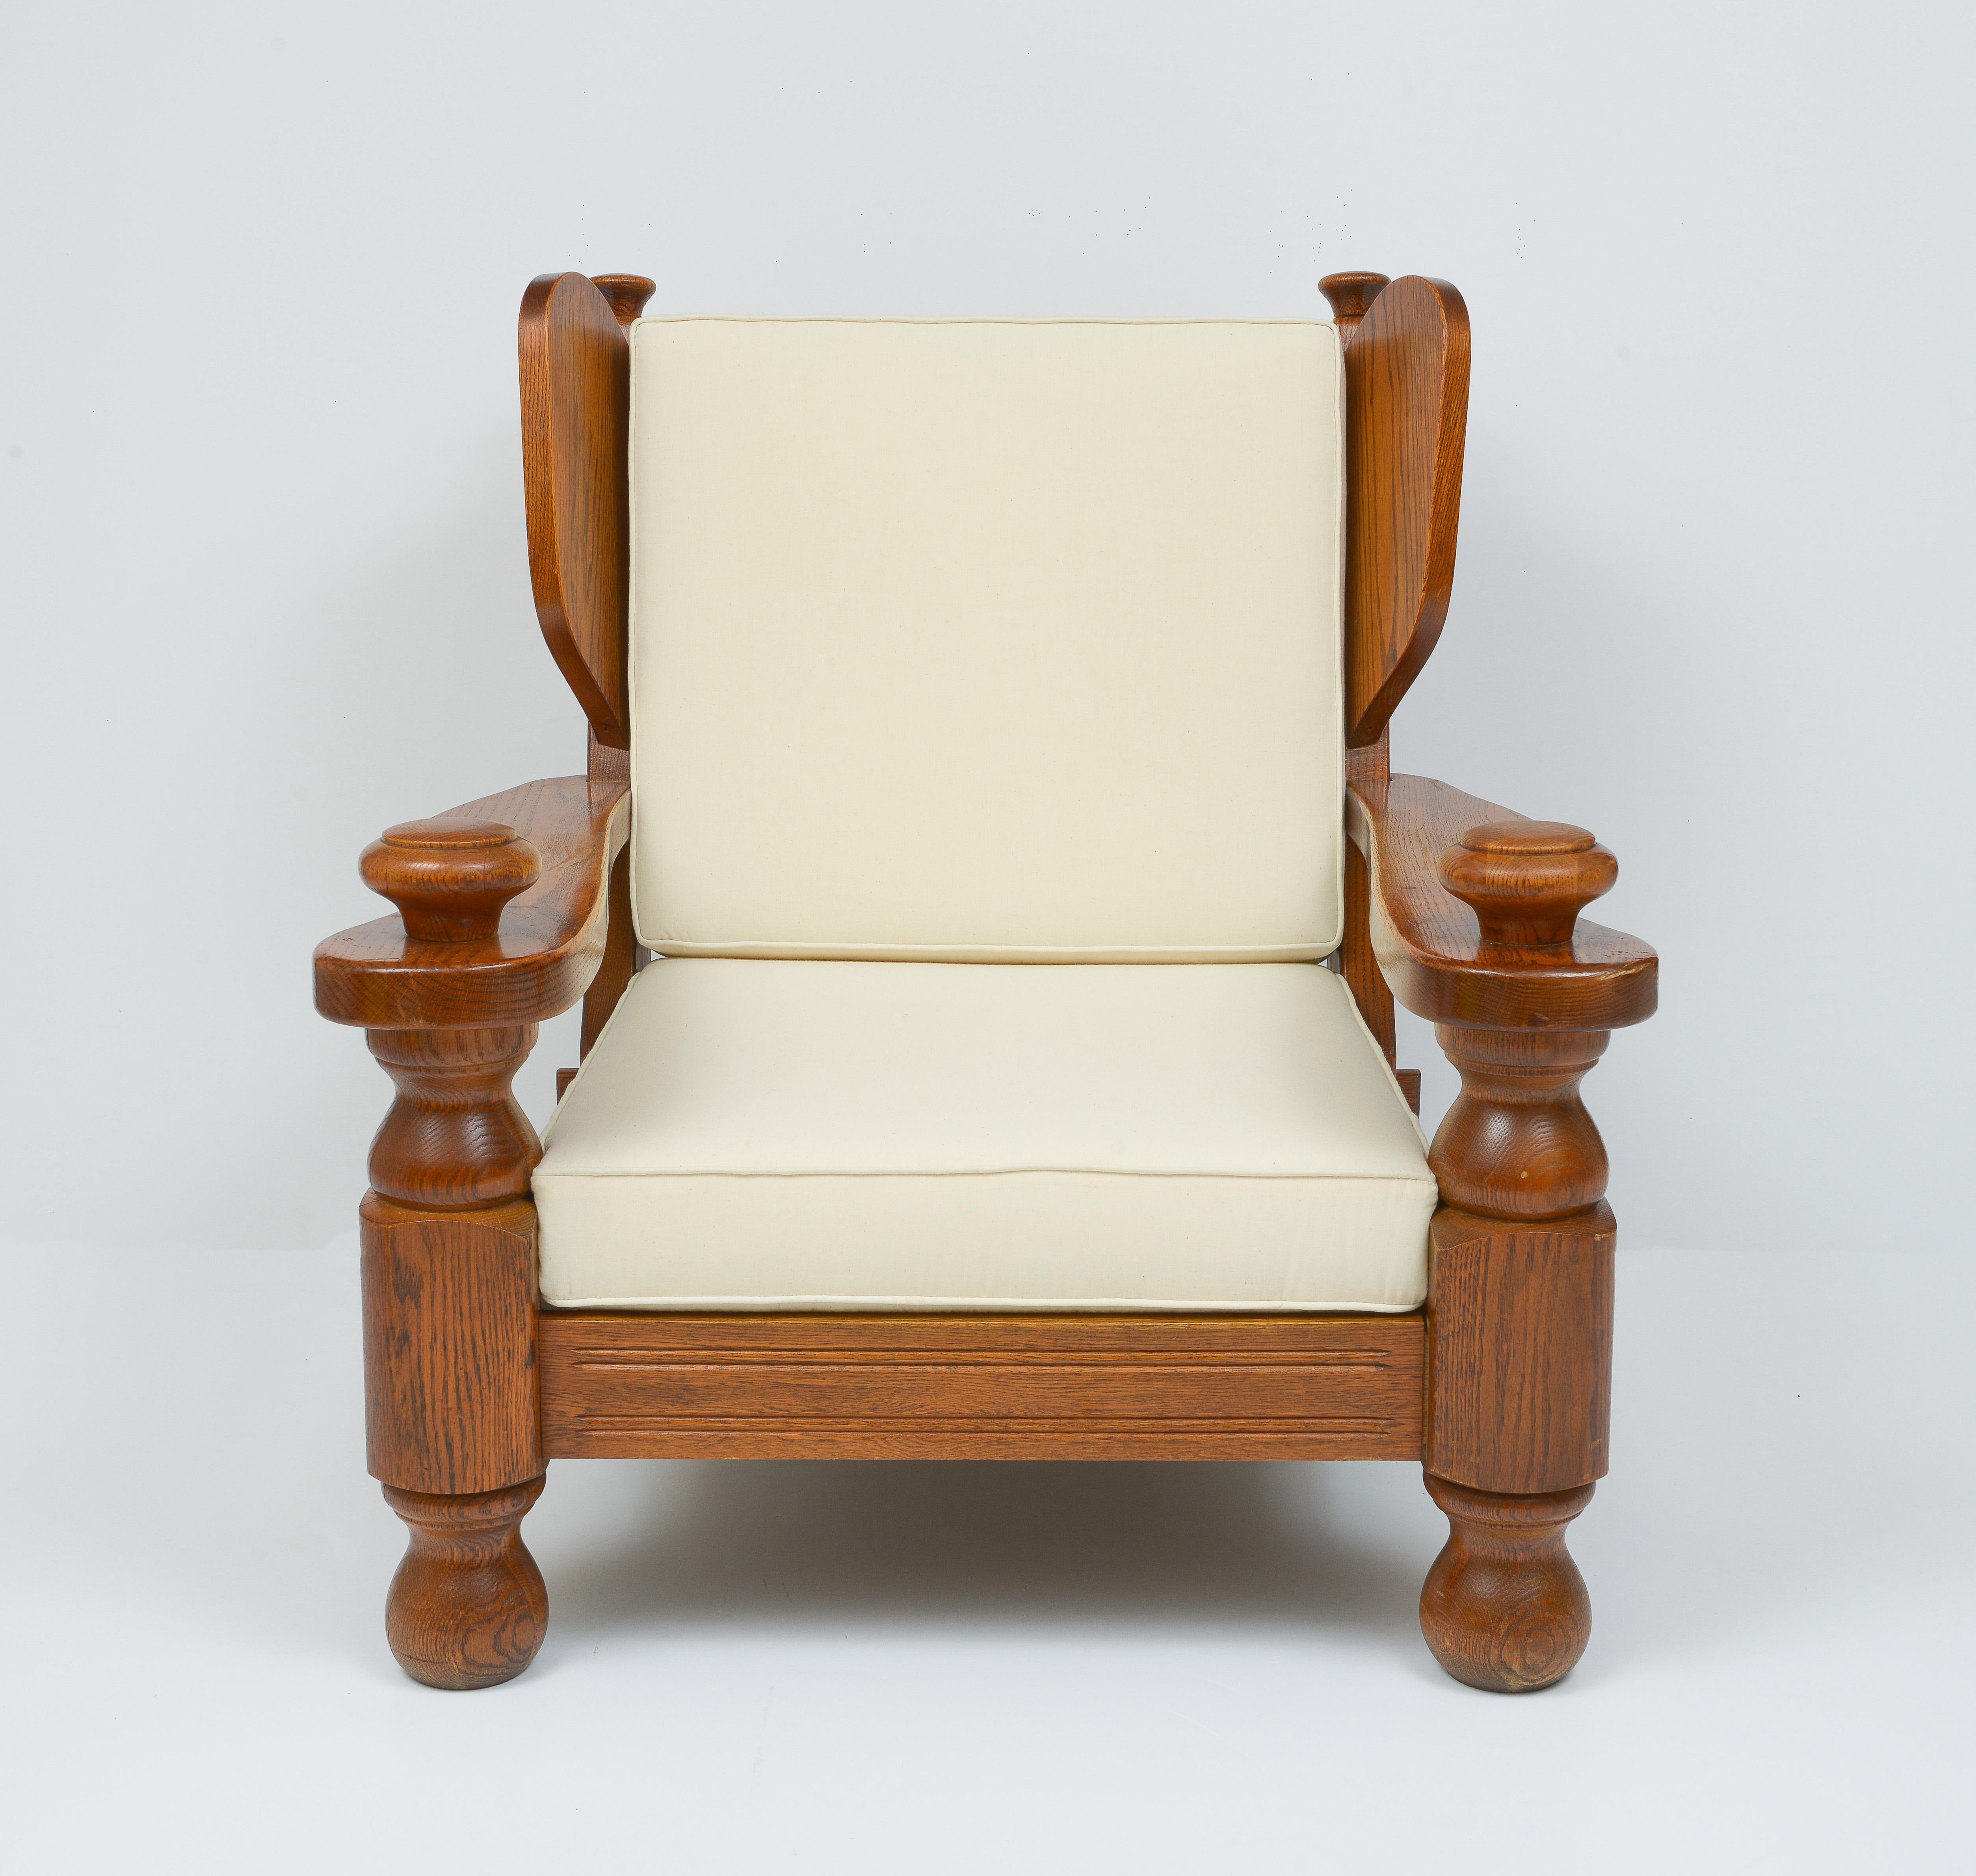 Awesome Rustic Stühle, sehr schwer, tief und bequem. Importiert aus Frankreich. Modernes Chalet oder perfekter eklektischer Mix für jedes Dekor. Schöne Maserung auf Holz.